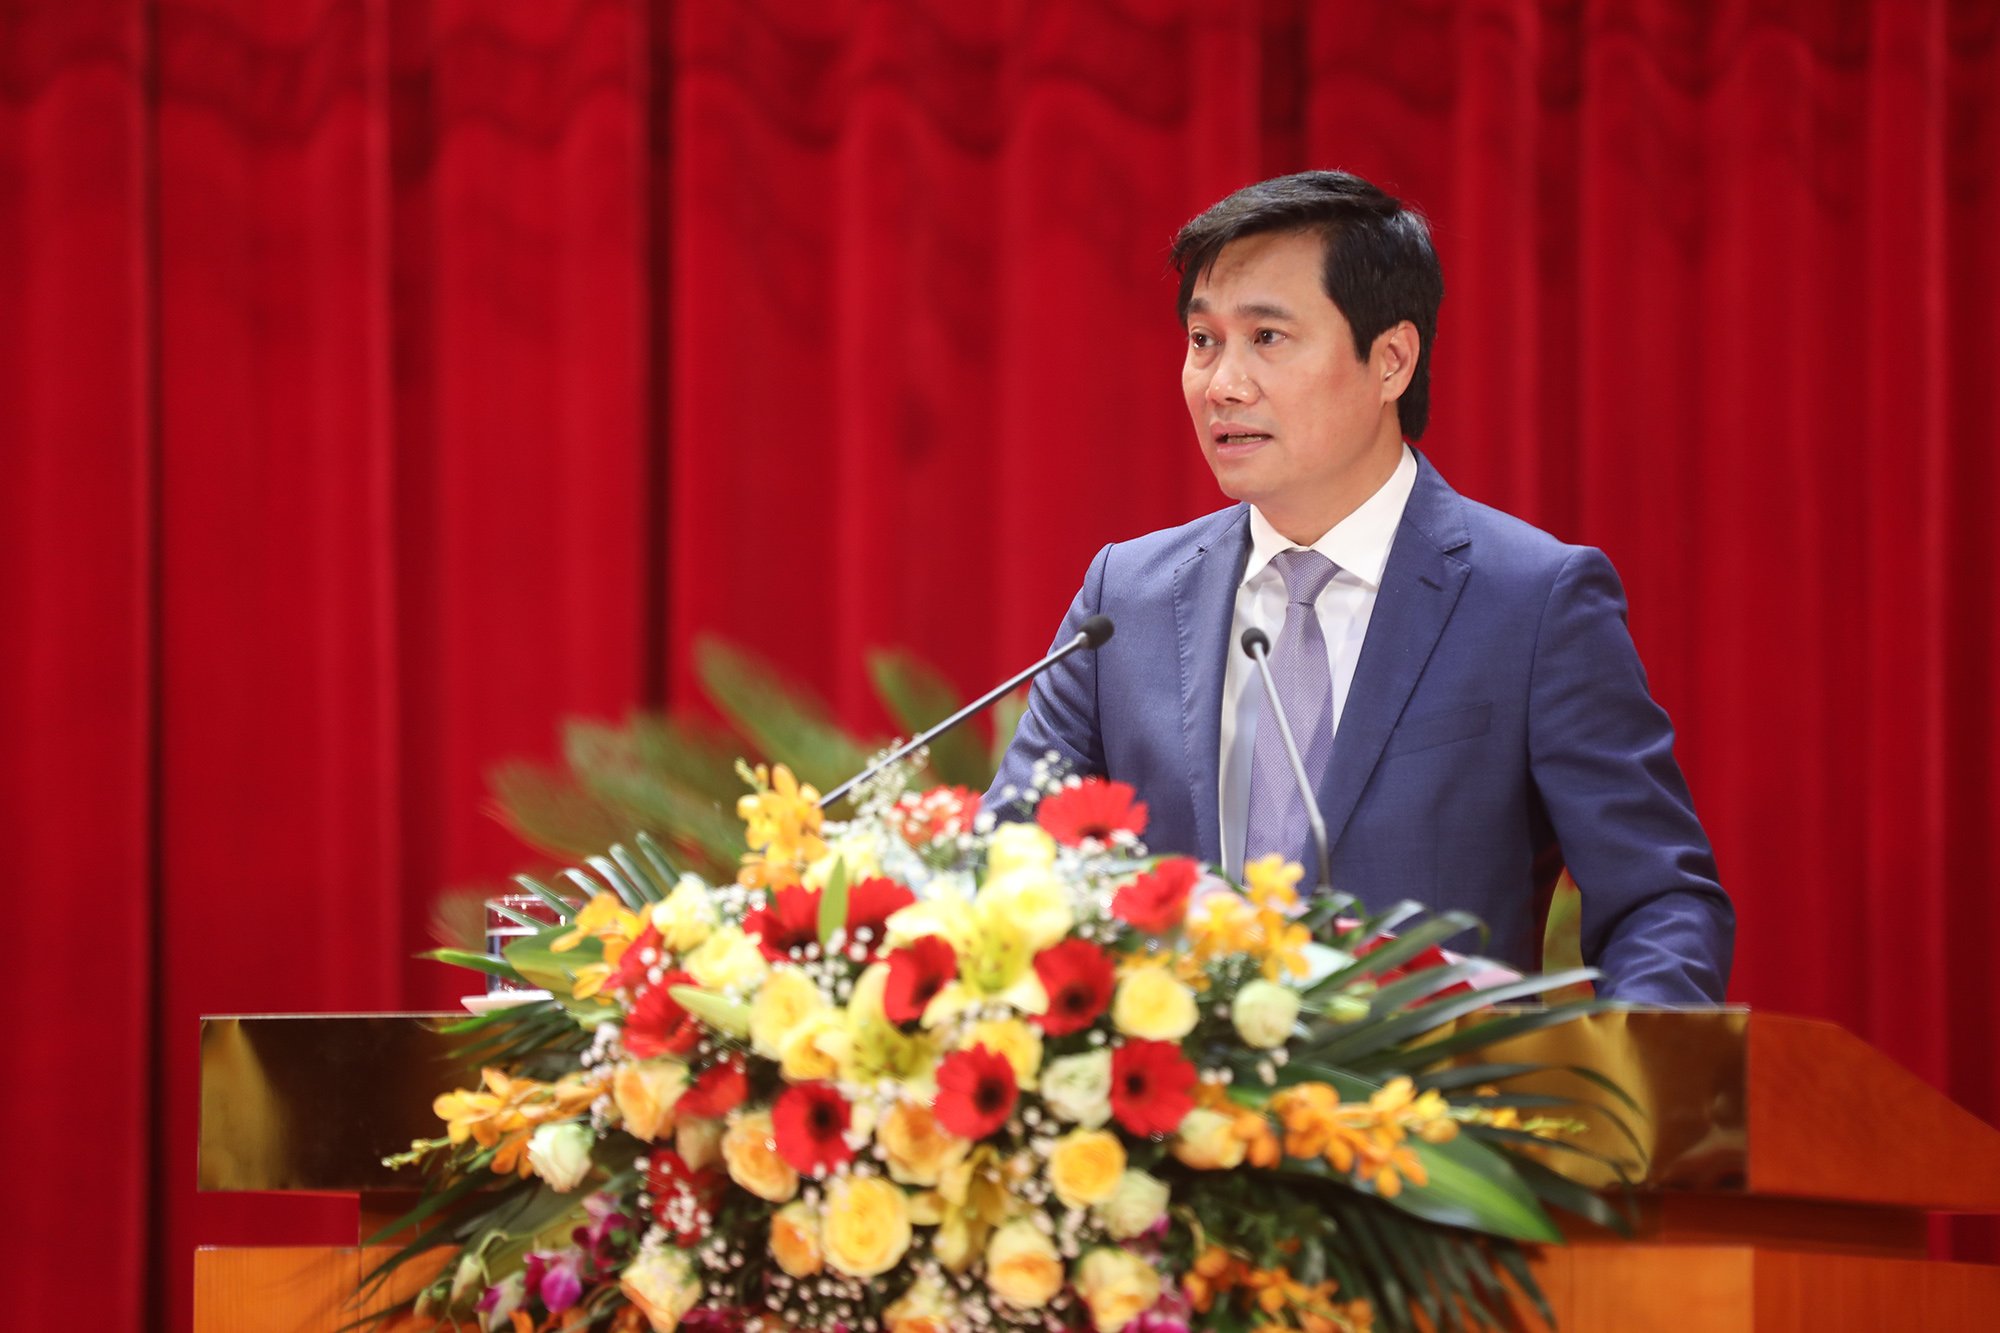 Đồng chí Nguyễn Tường Văn, Phó Bí thư Tỉnh ủy, Chủ tịch UBND tỉnh, phát biểu tại kỳ họp.